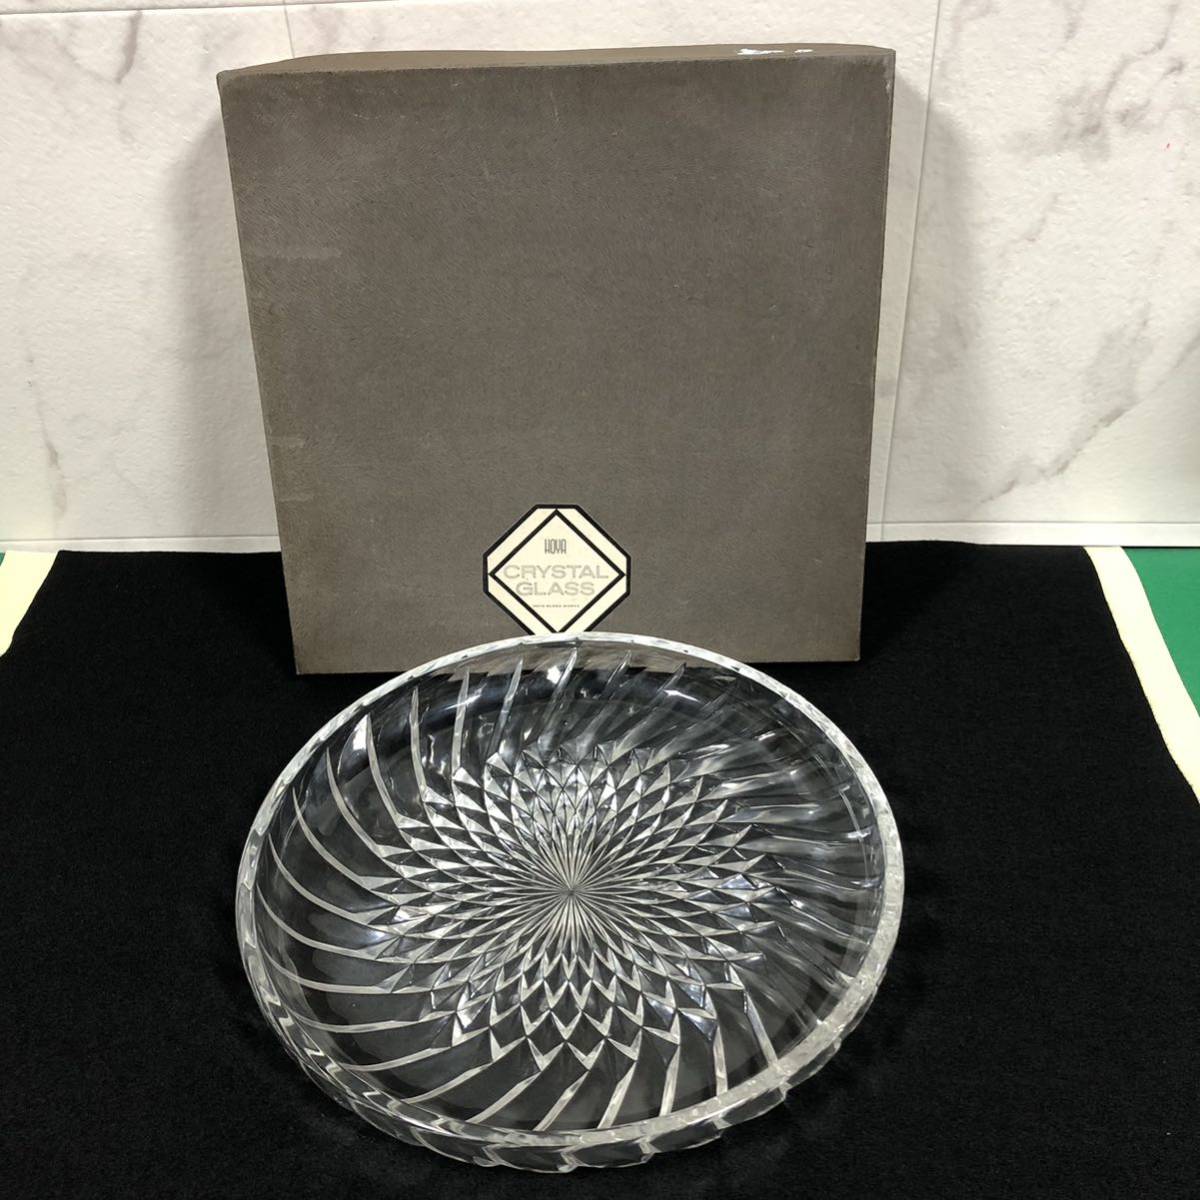 保谷クリスタル HOYA CRYSTAL glass 飾り皿 プレート 食器 インテリア 大皿 保谷 クリスタル ガラス皿_画像1